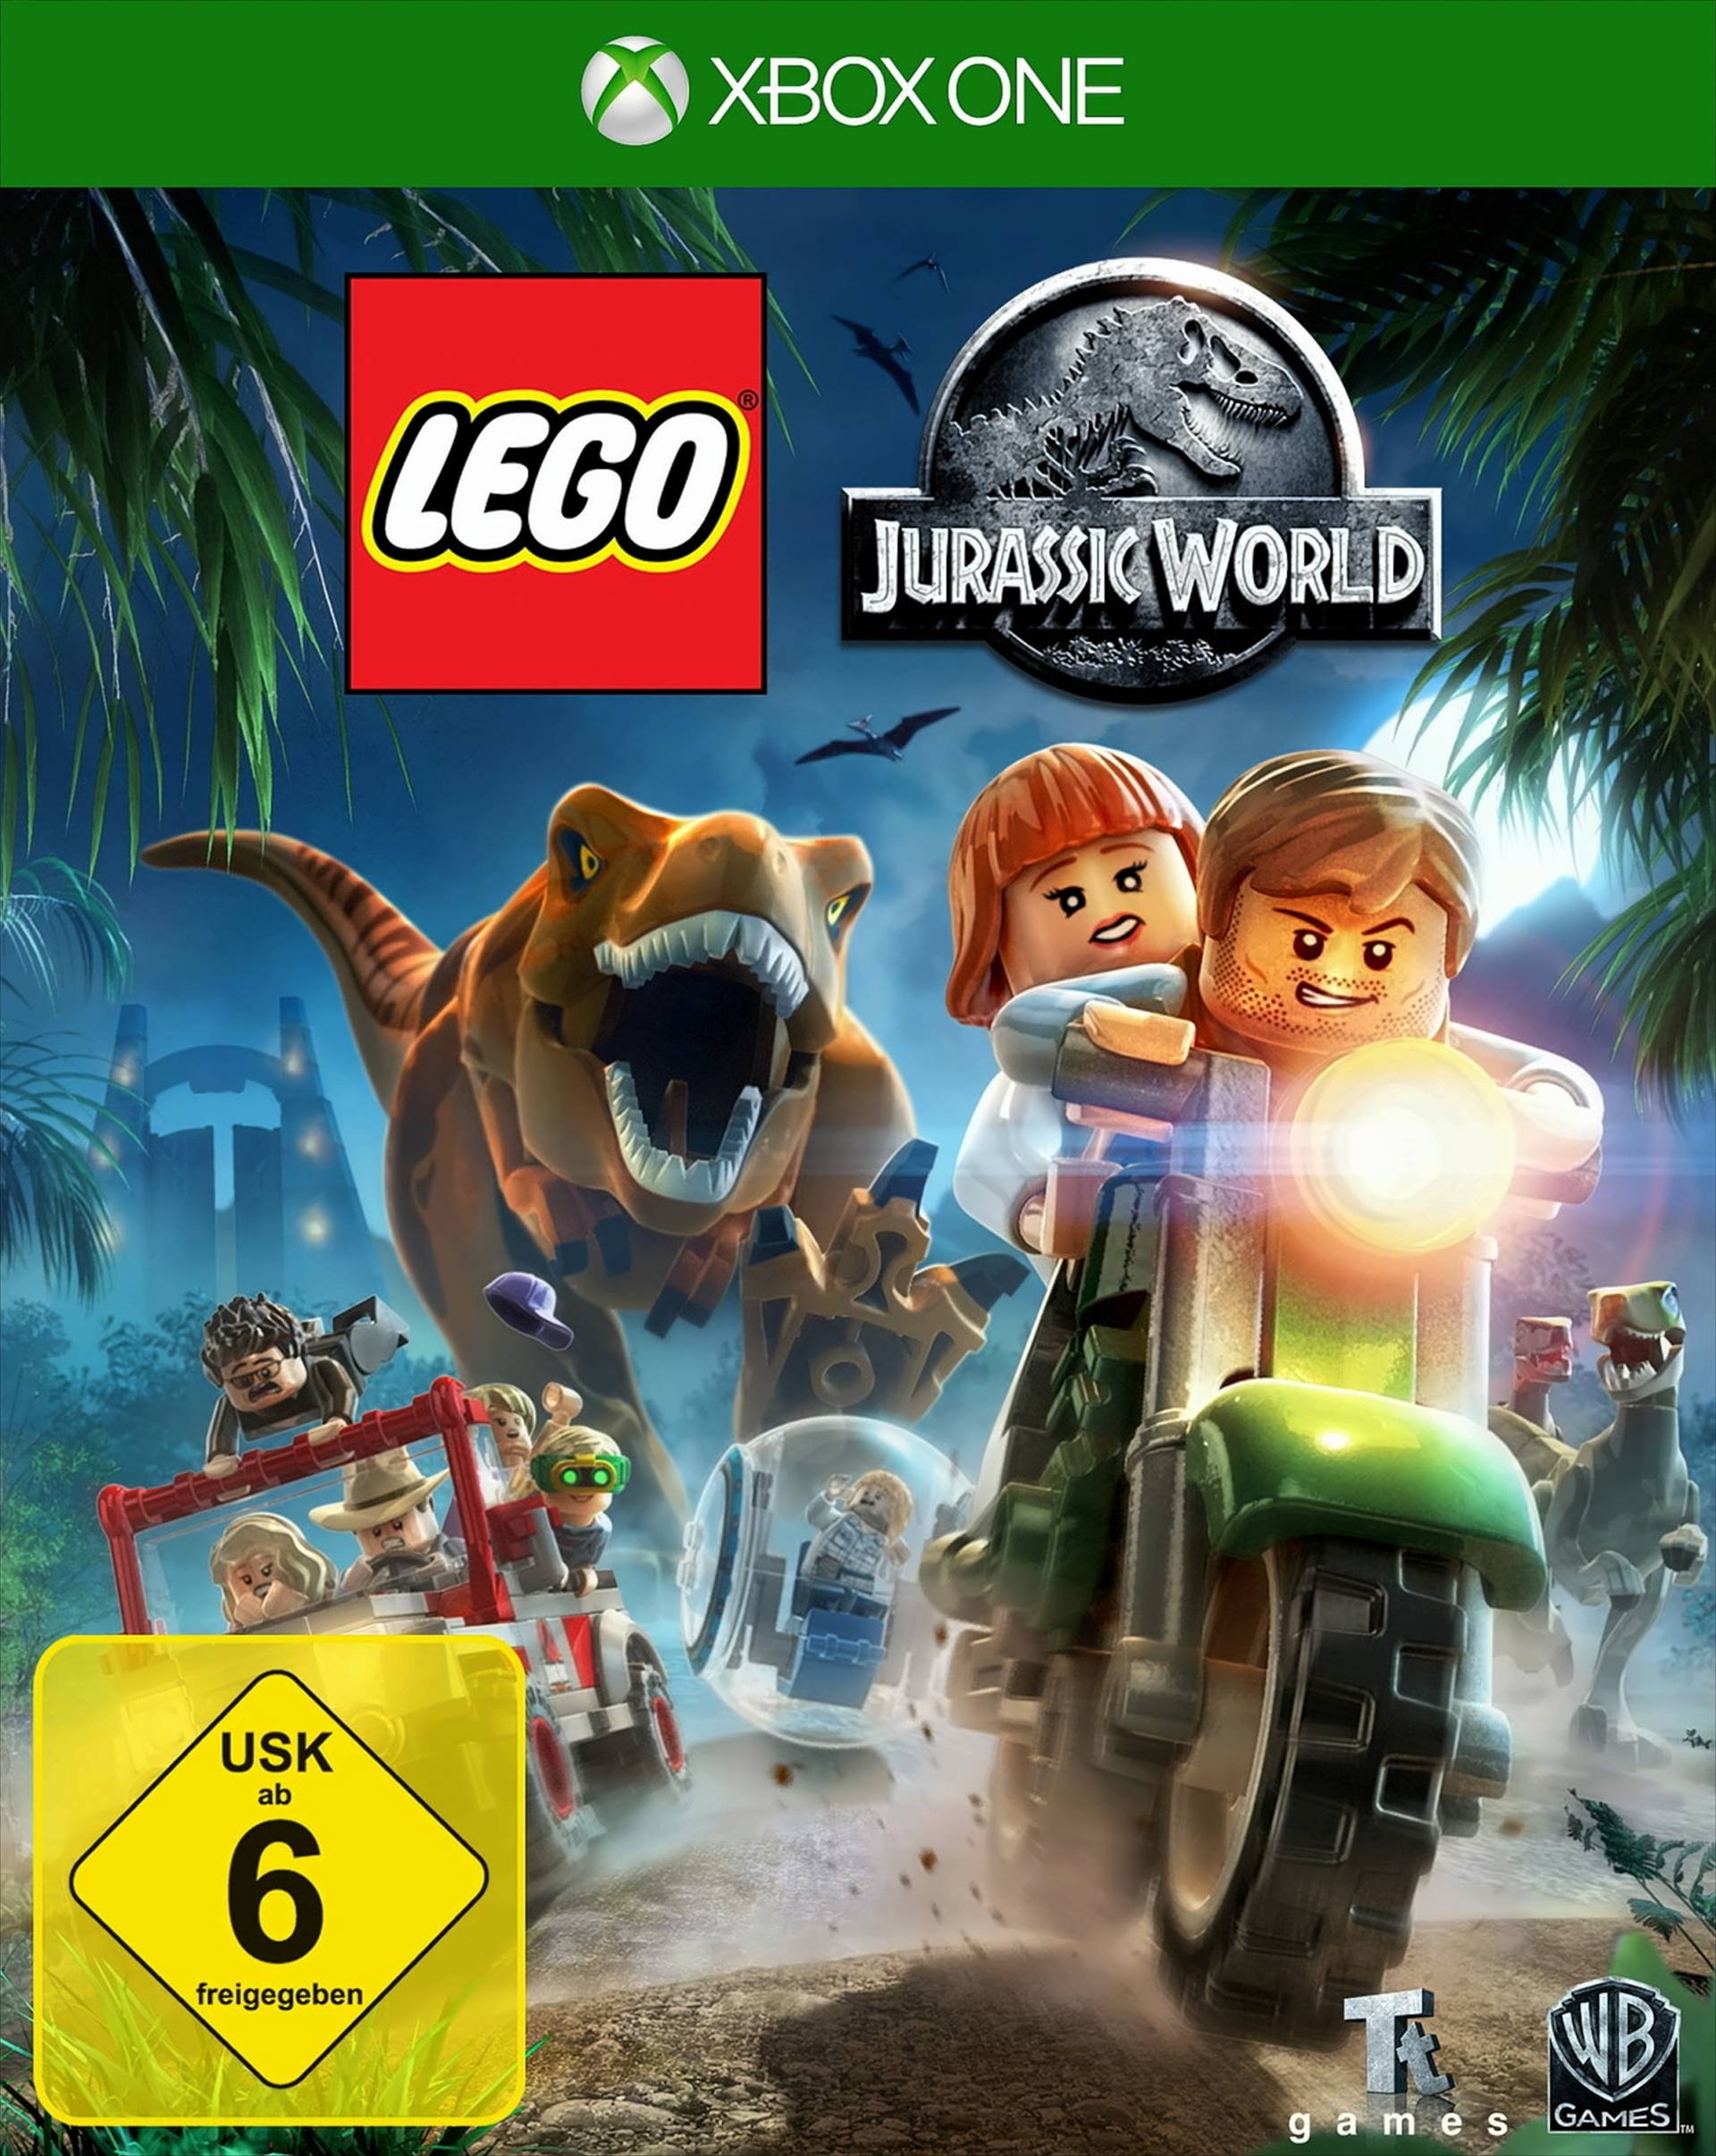 LEGO Jurassic World von Warner Bros. Interactive